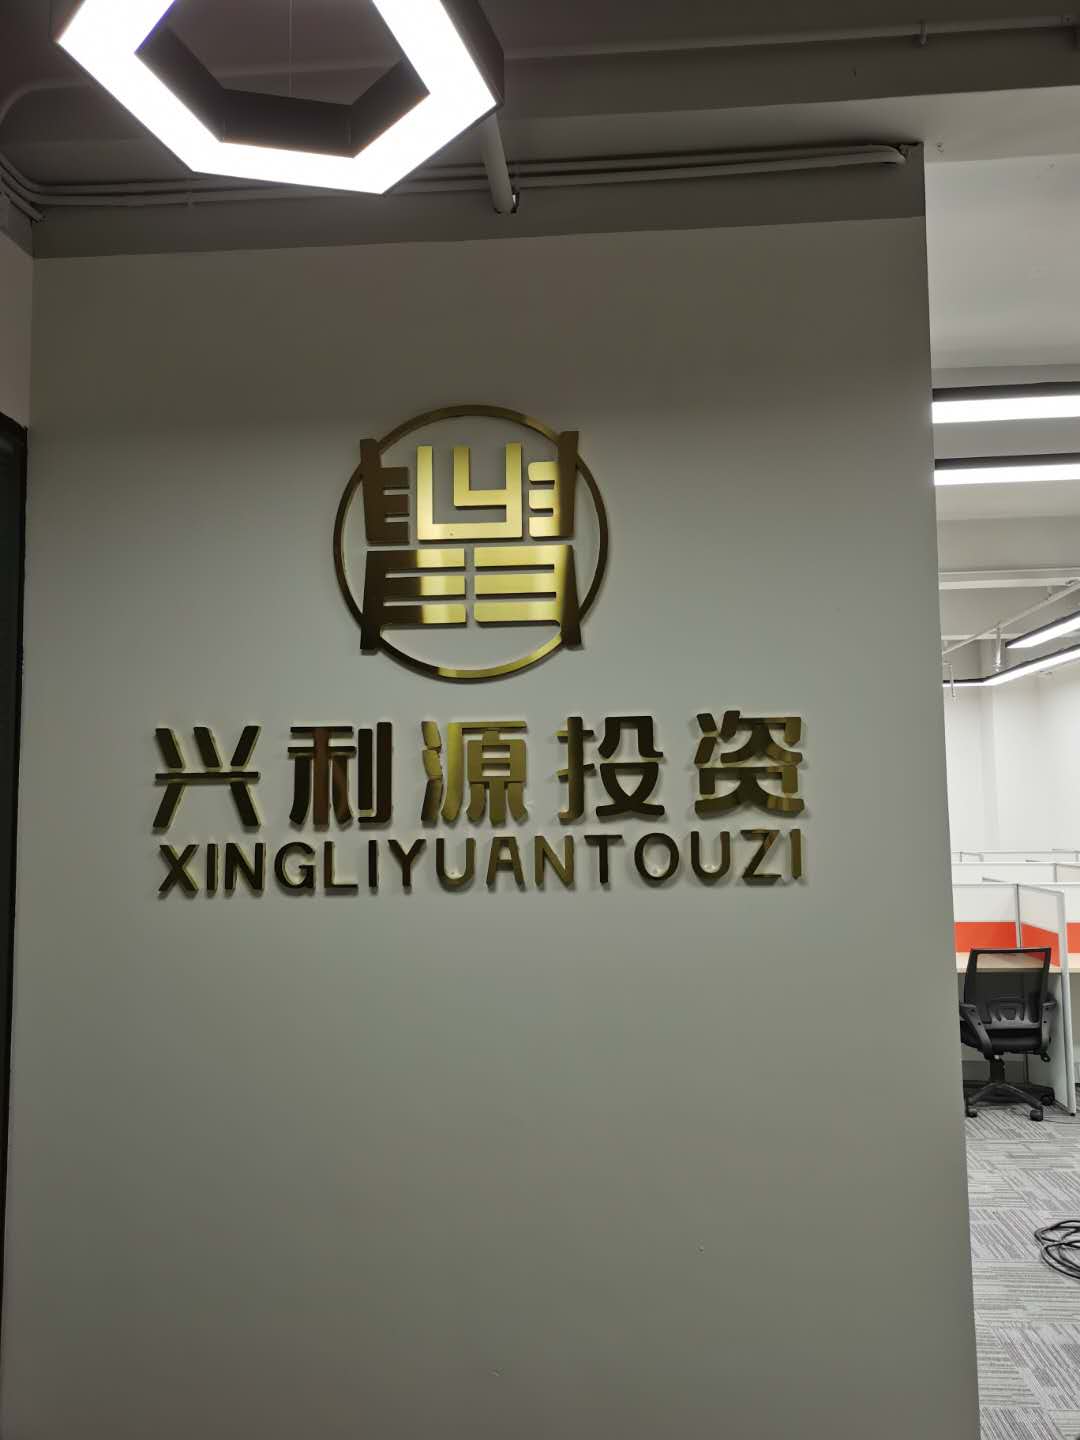 金融投资公司logo背景墙